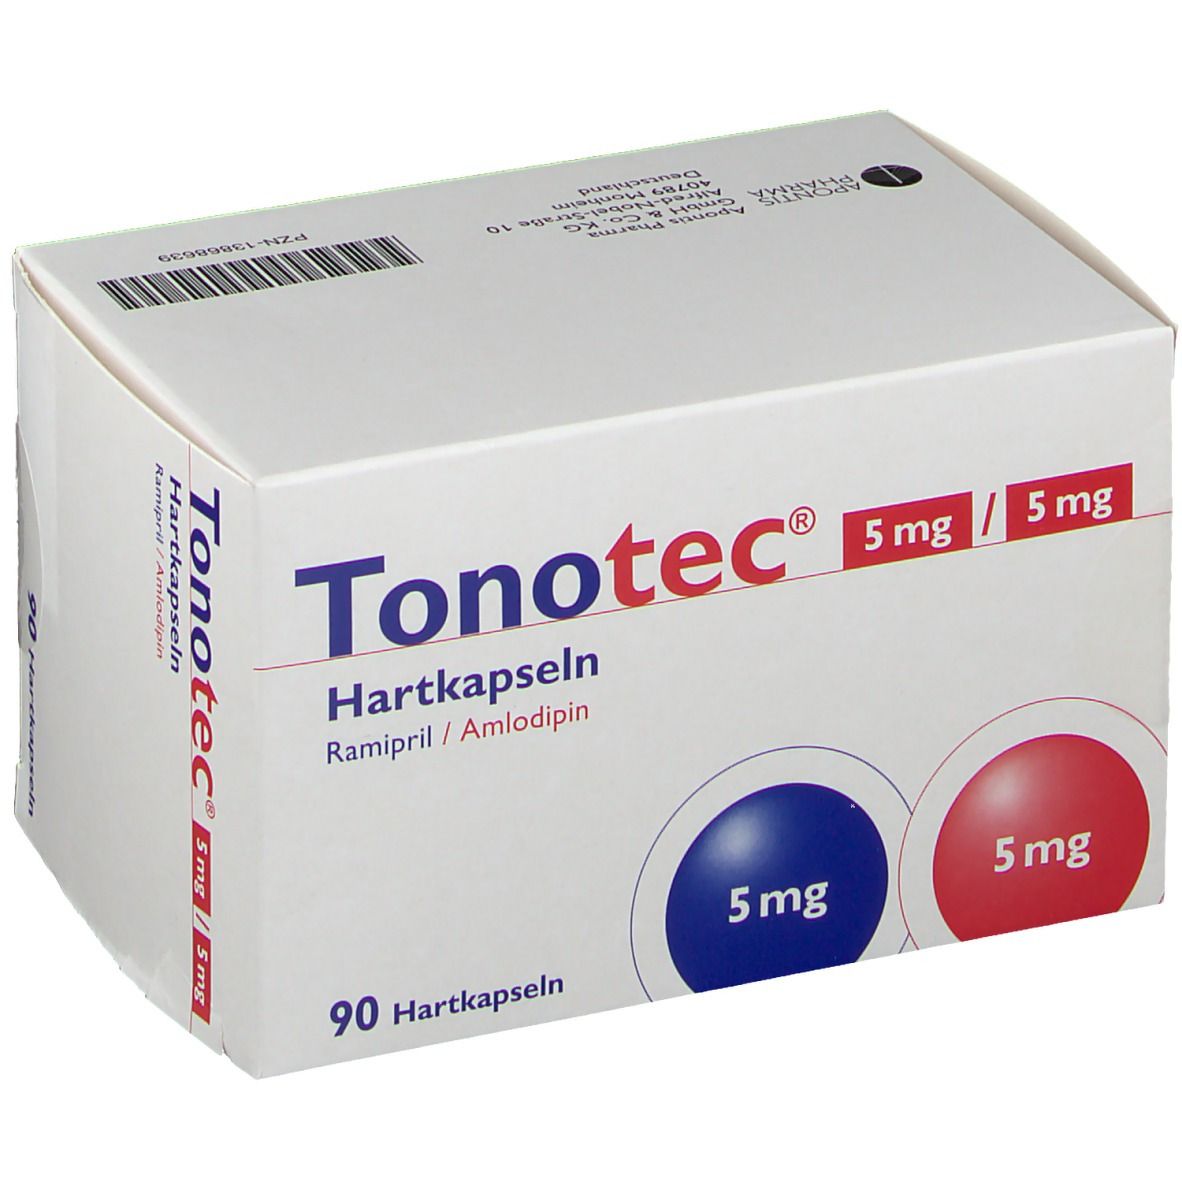 Tonotec® 5 mg/5 mg